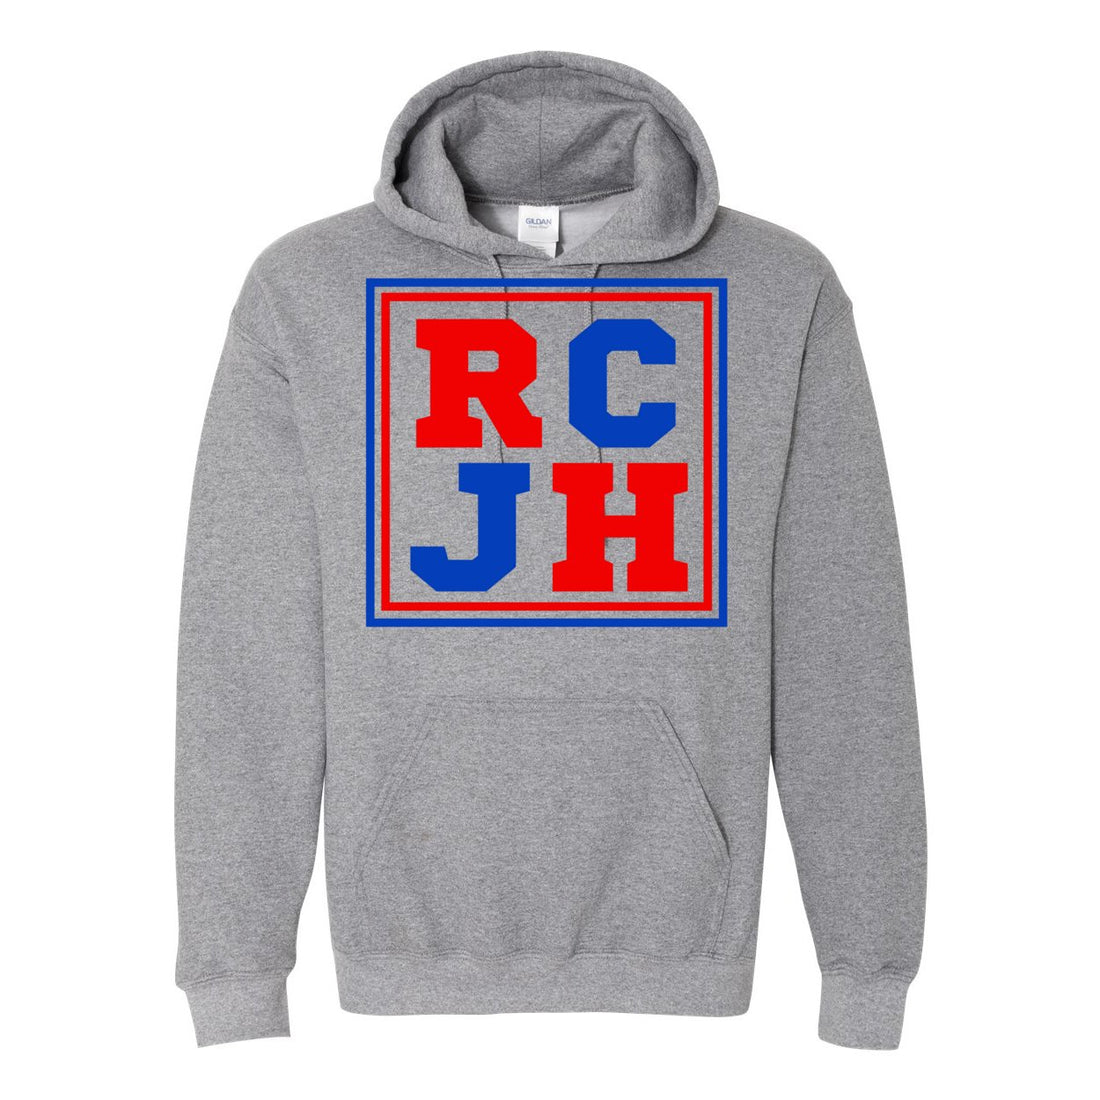 RCJH Heavy Blend Hooded Sweatshirt - Sweaters/Hoodies - Positively Sassy - RCJH Heavy Blend Hooded Sweatshirt